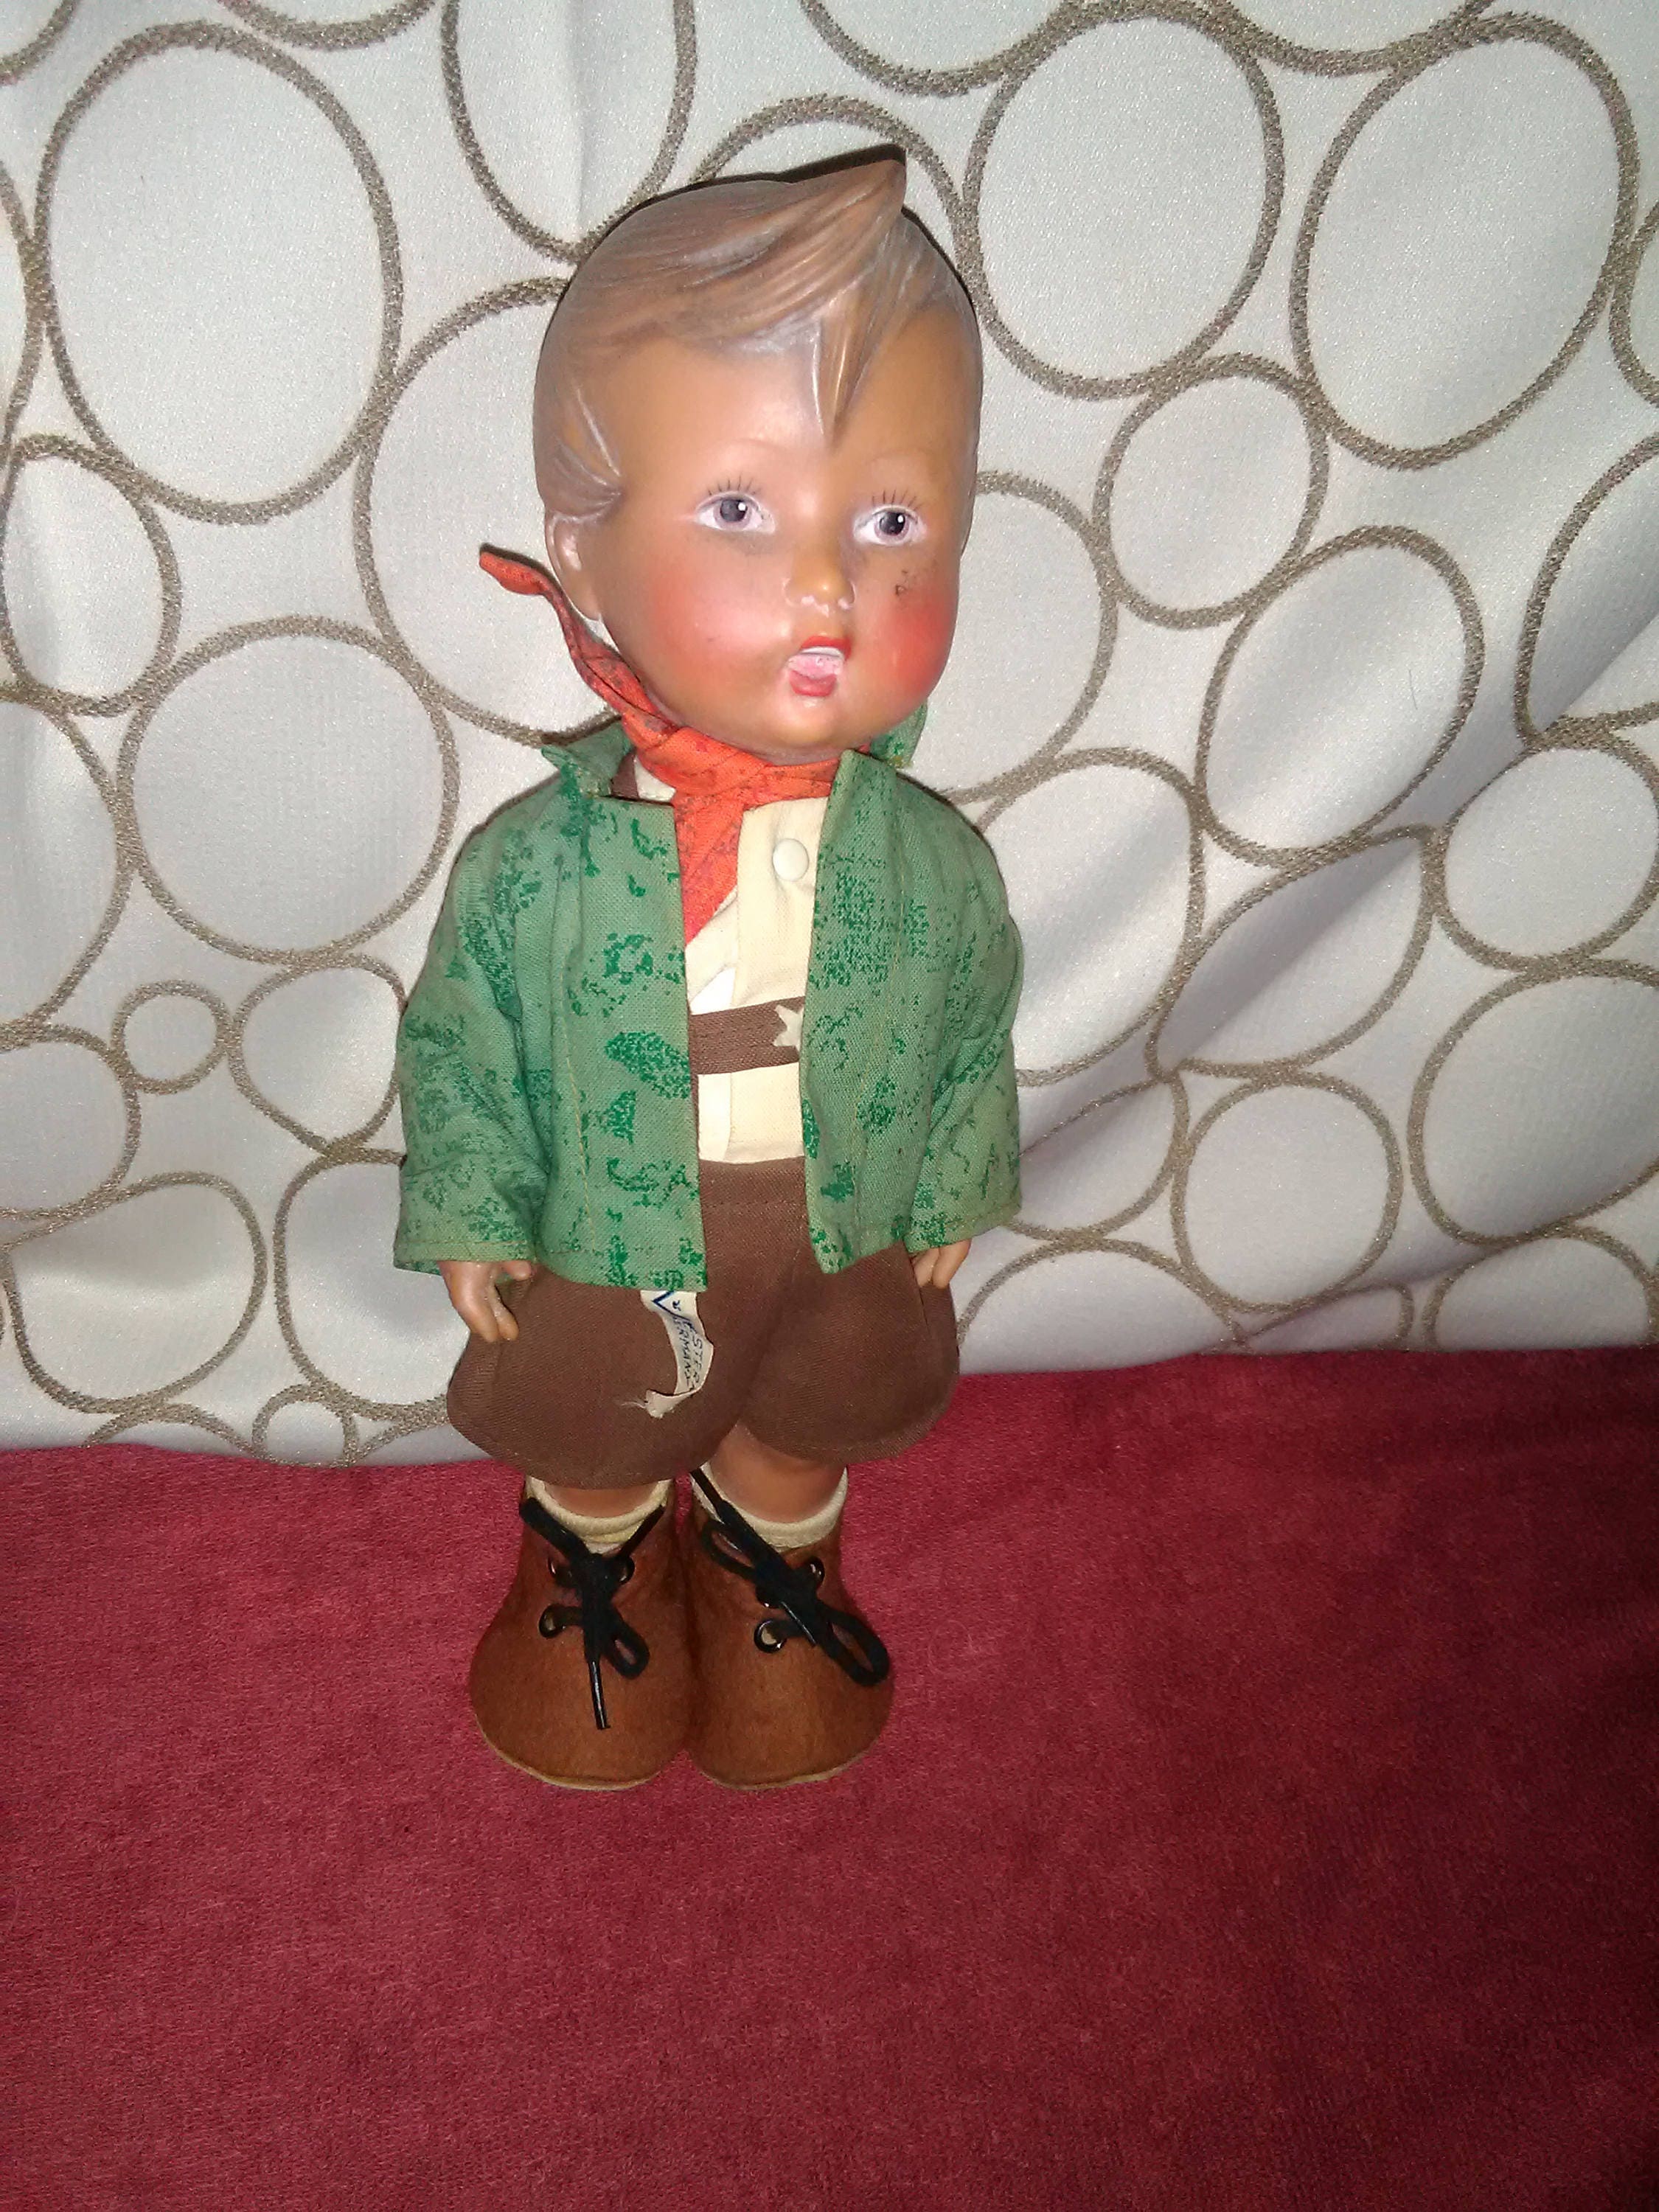 Blinke forbruger samtidig Hummel 12 rubber Doll Named Anderl With Original Clothes | Etsy